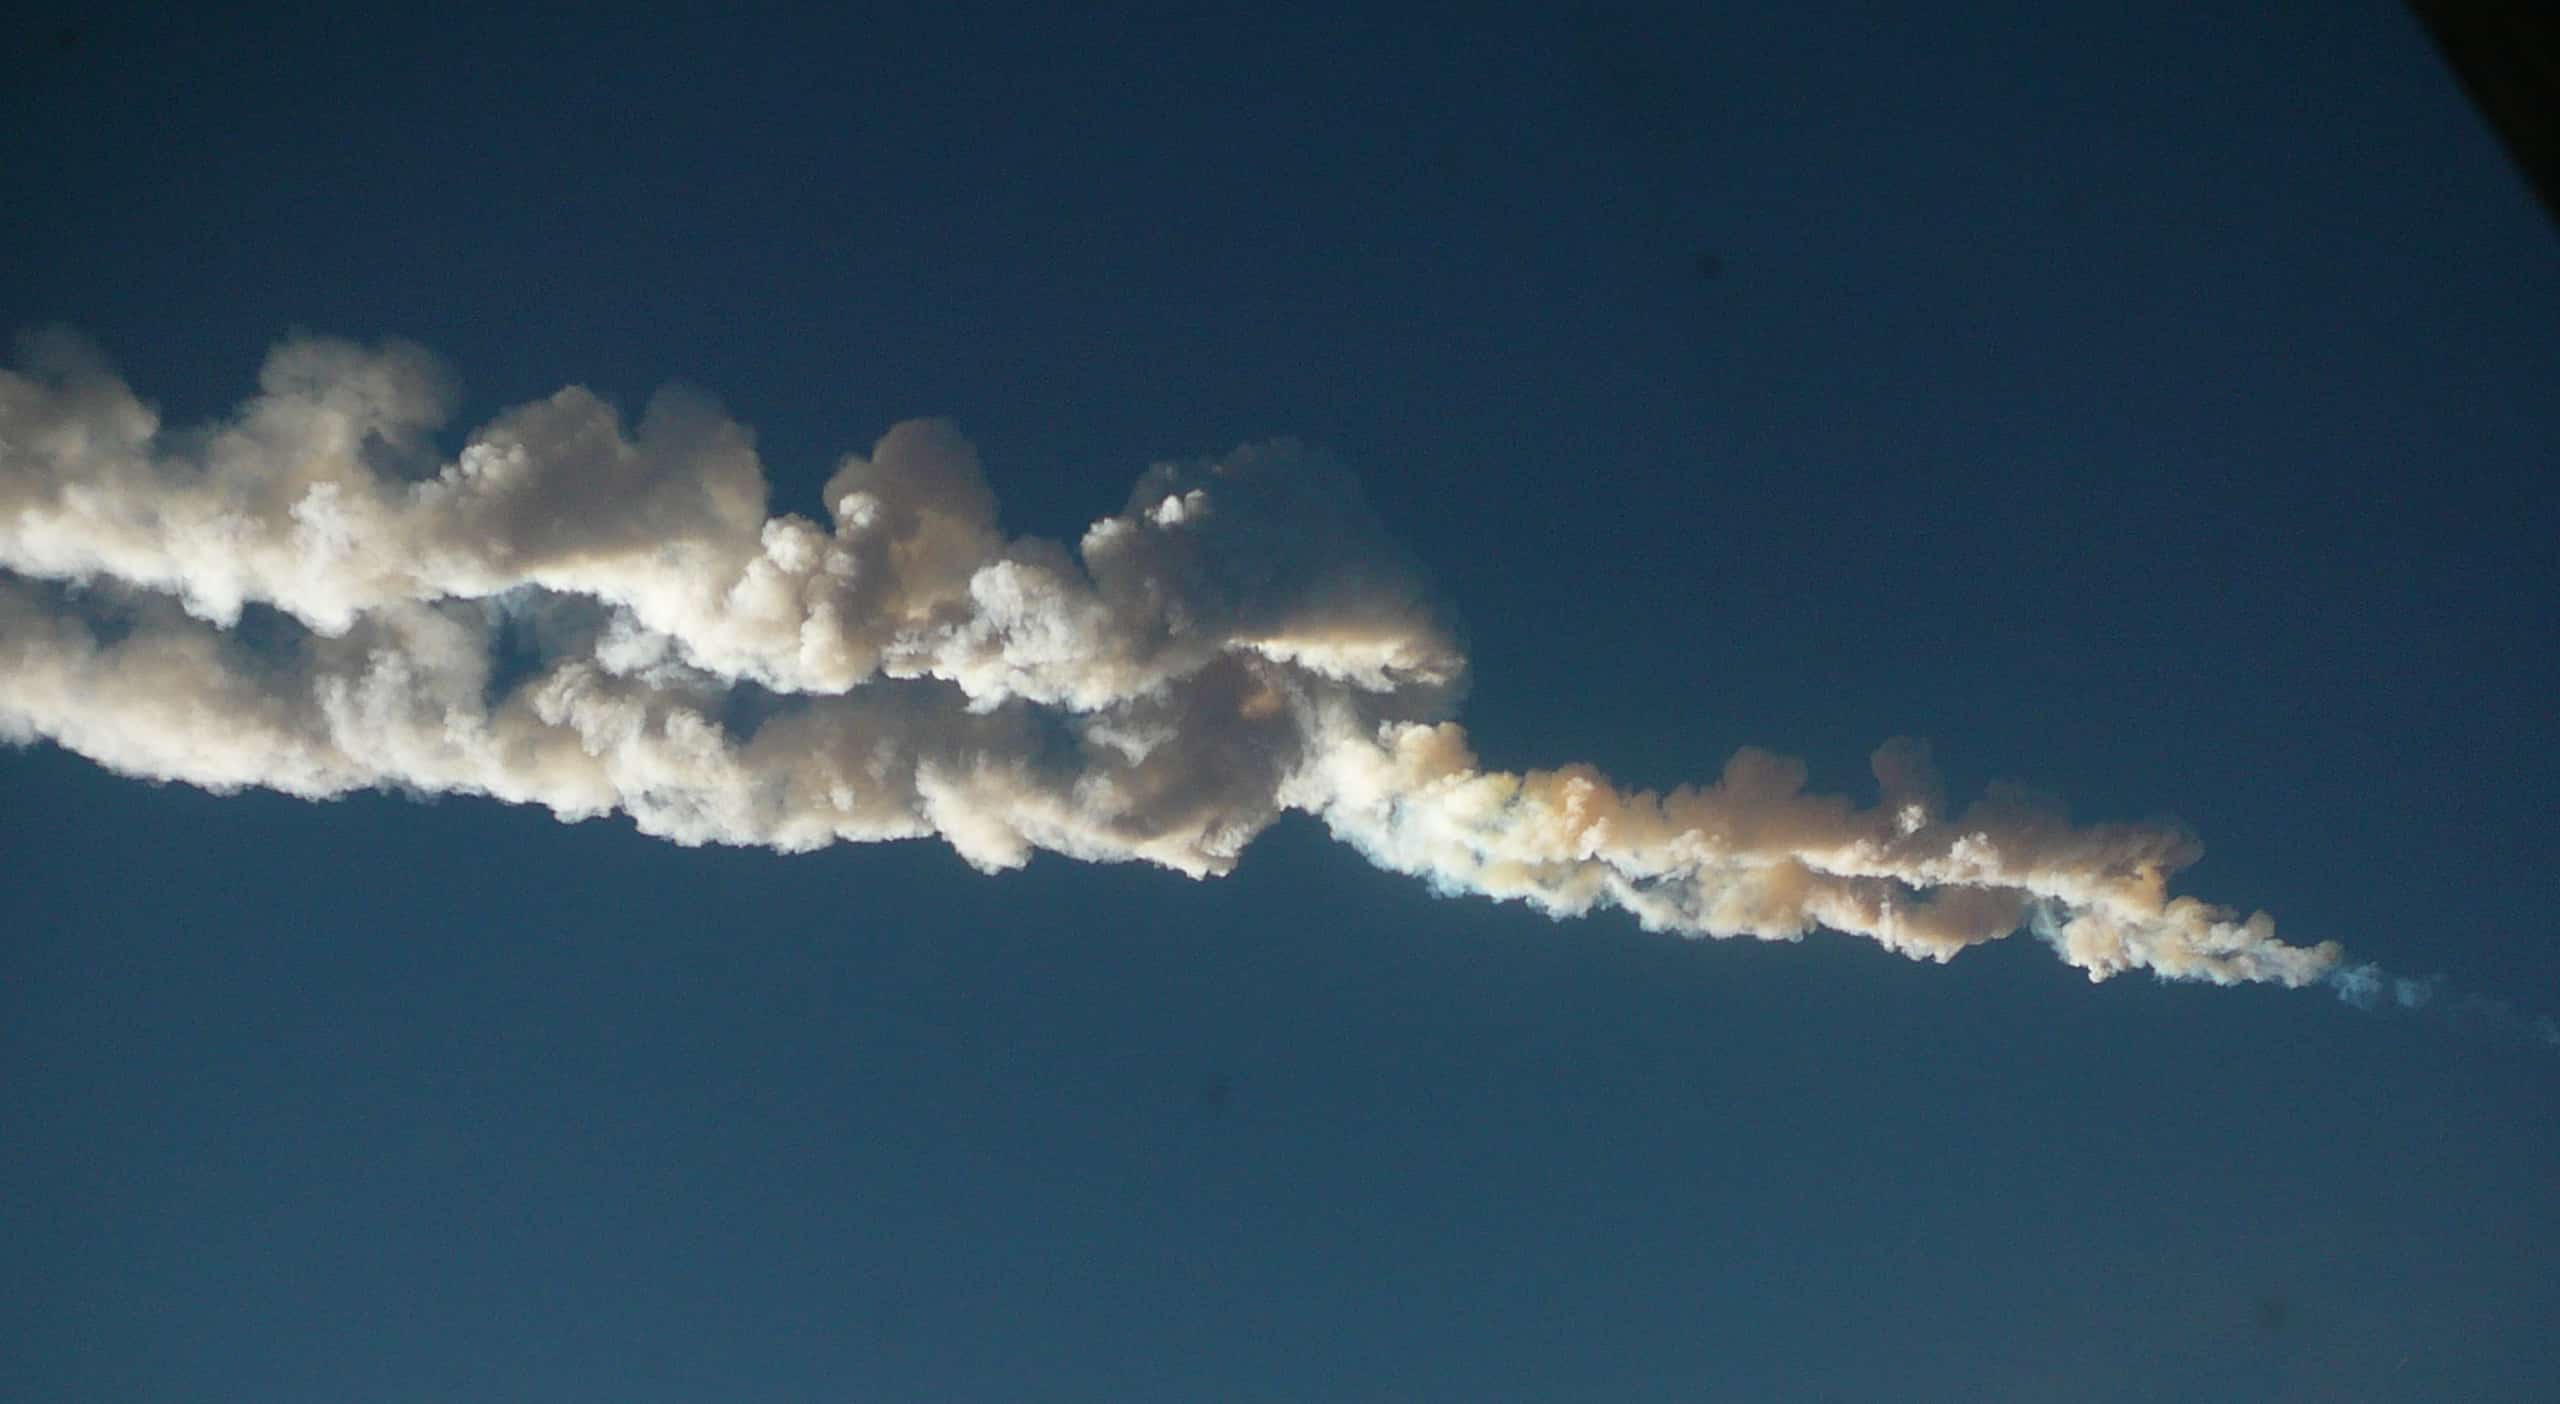 Chelyabinsk_meteor_trace_15-02-2013